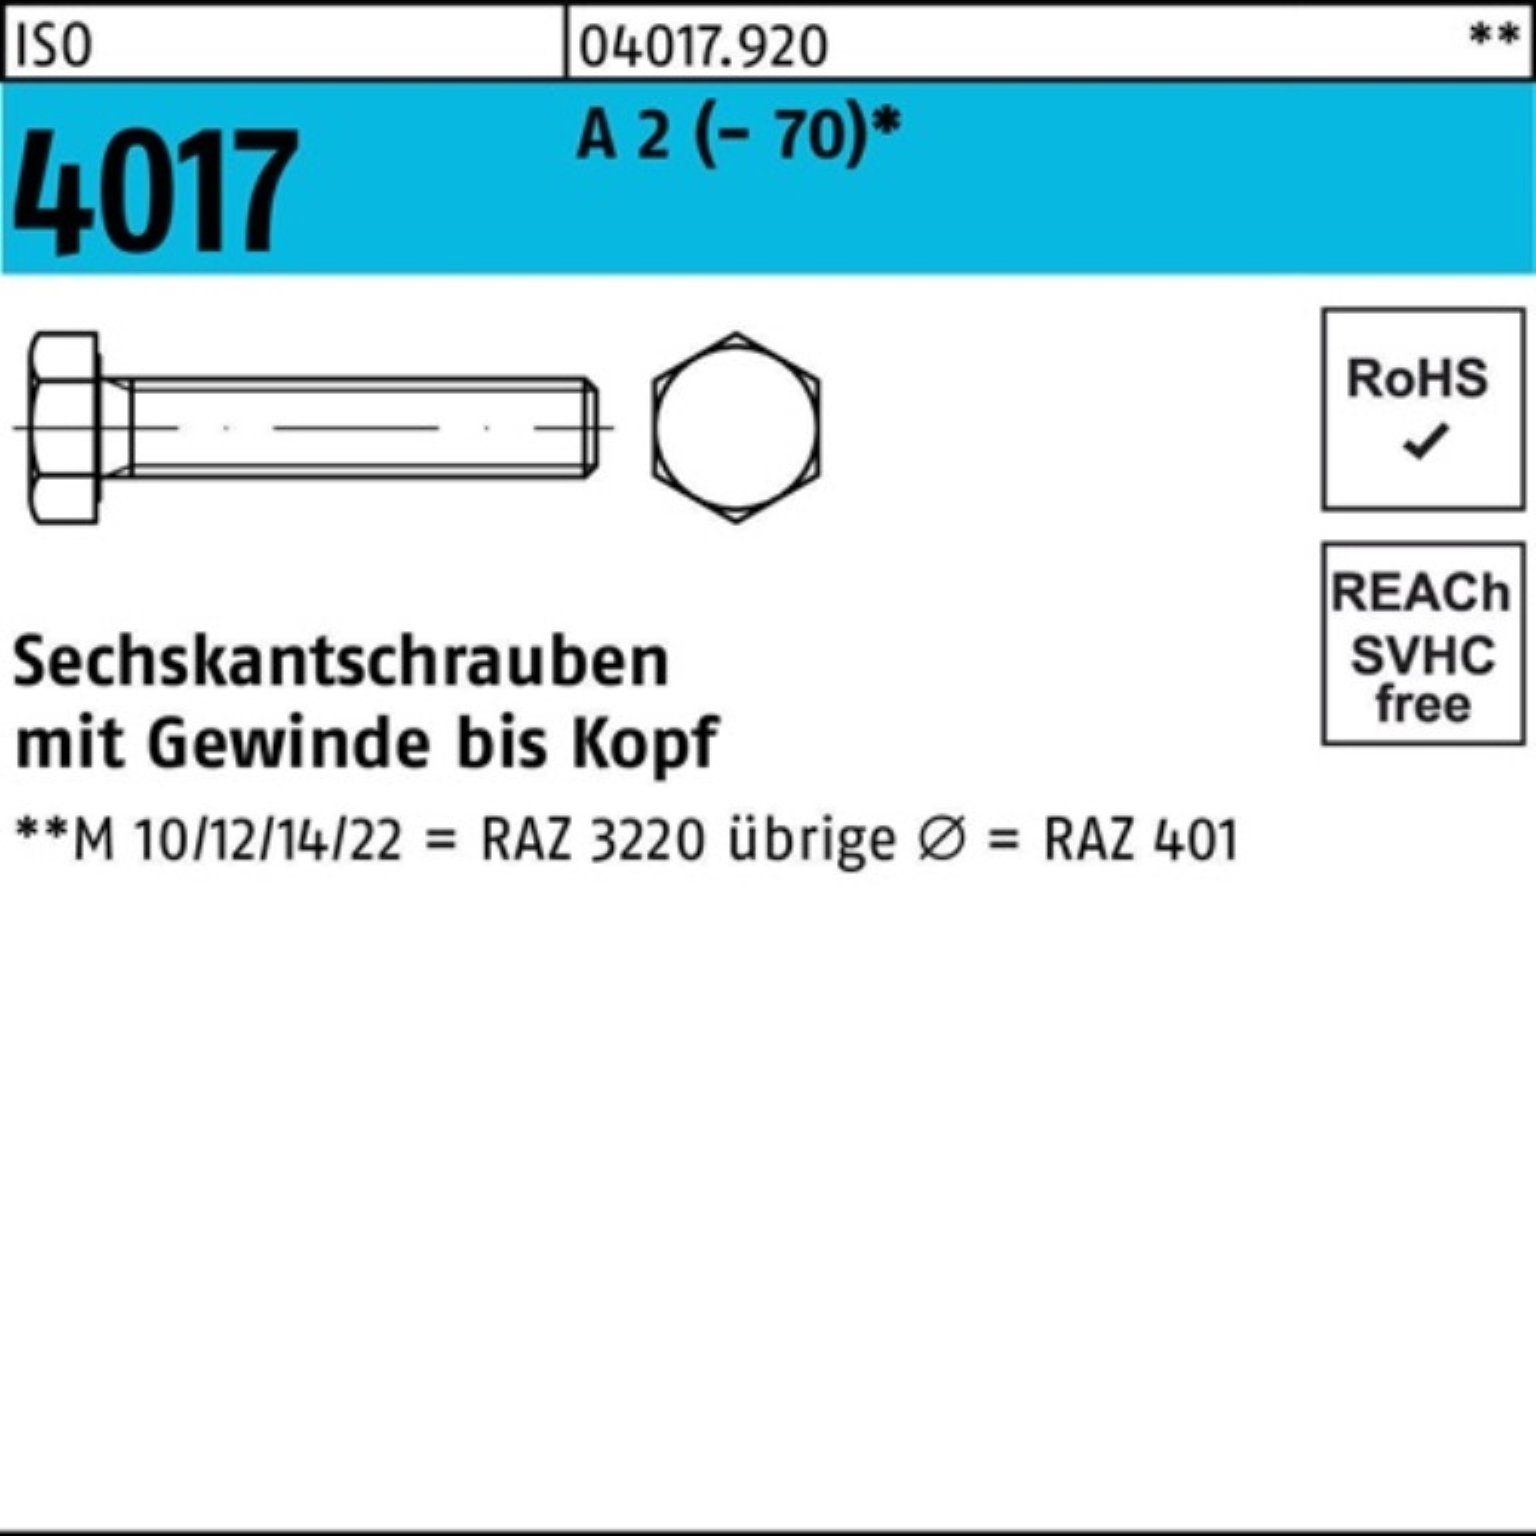 Bufab Sechskantschraube 100er Pack Sechskantschraube ISO 4017 VG M12x 150 A 2 (70) 1 Stück